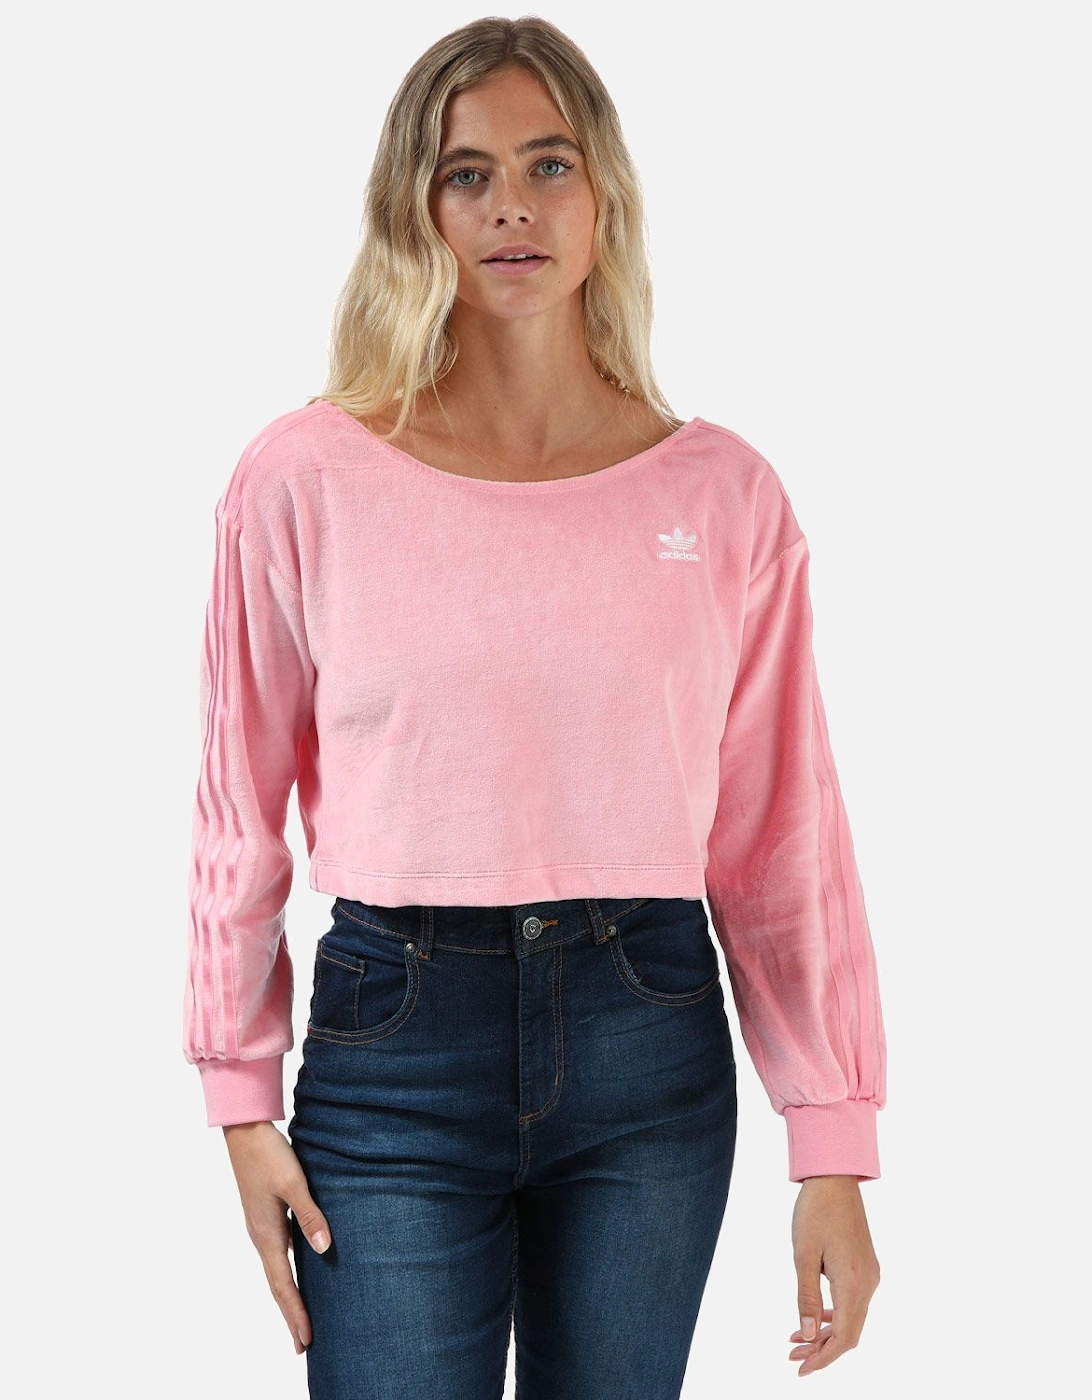 Womens Loungewear Sweater, 7 of 6